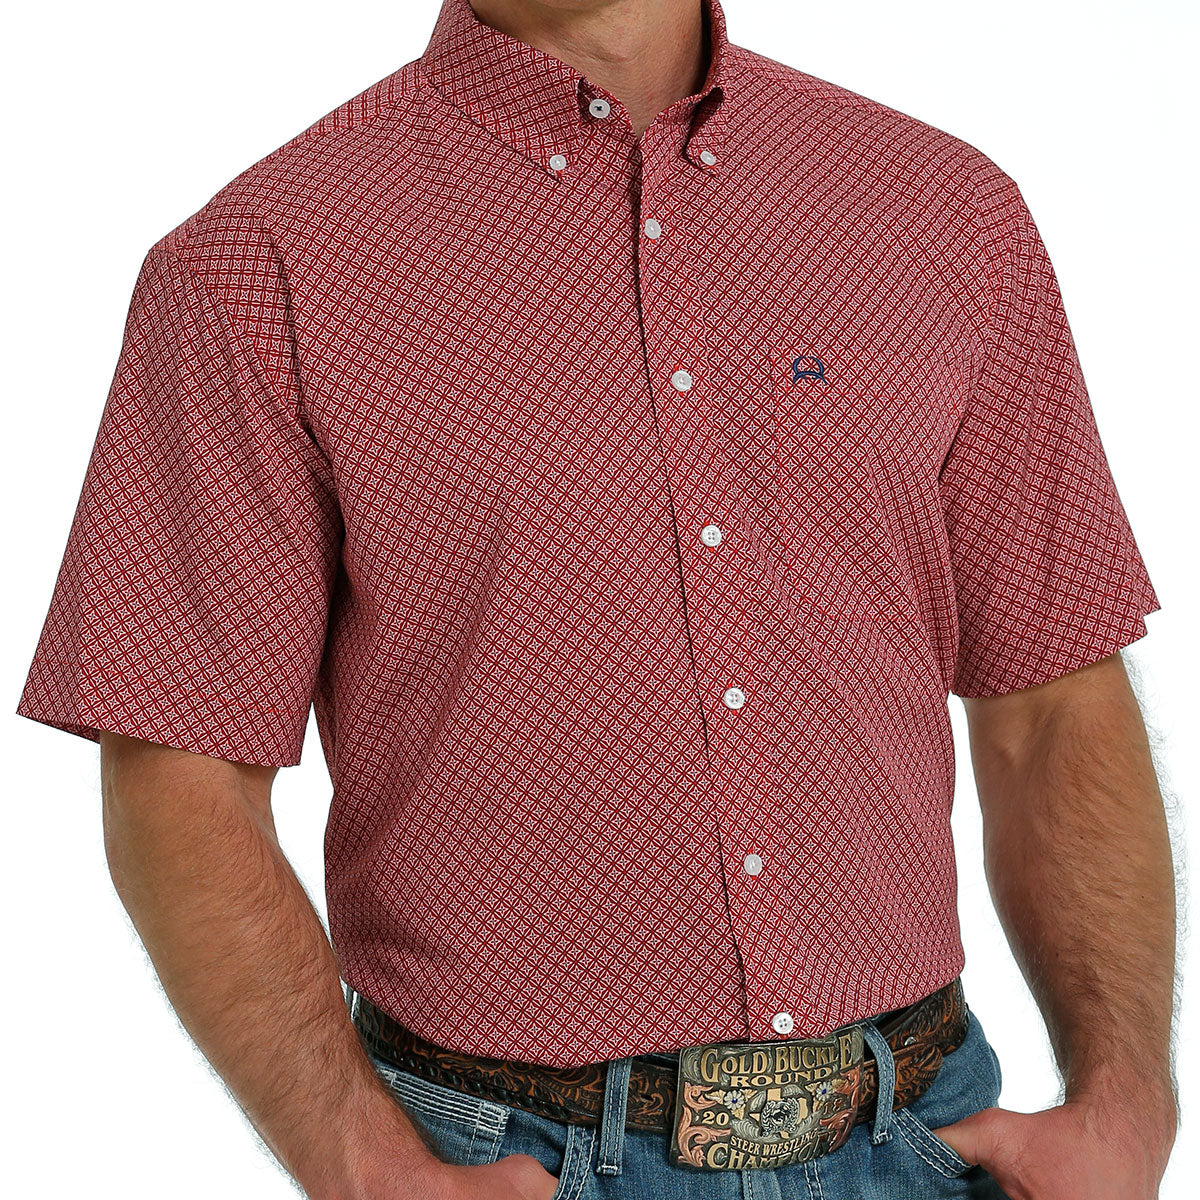 Cinch Men's Arenaflex Red Diamond Print Button Up Shirt MTW1704126